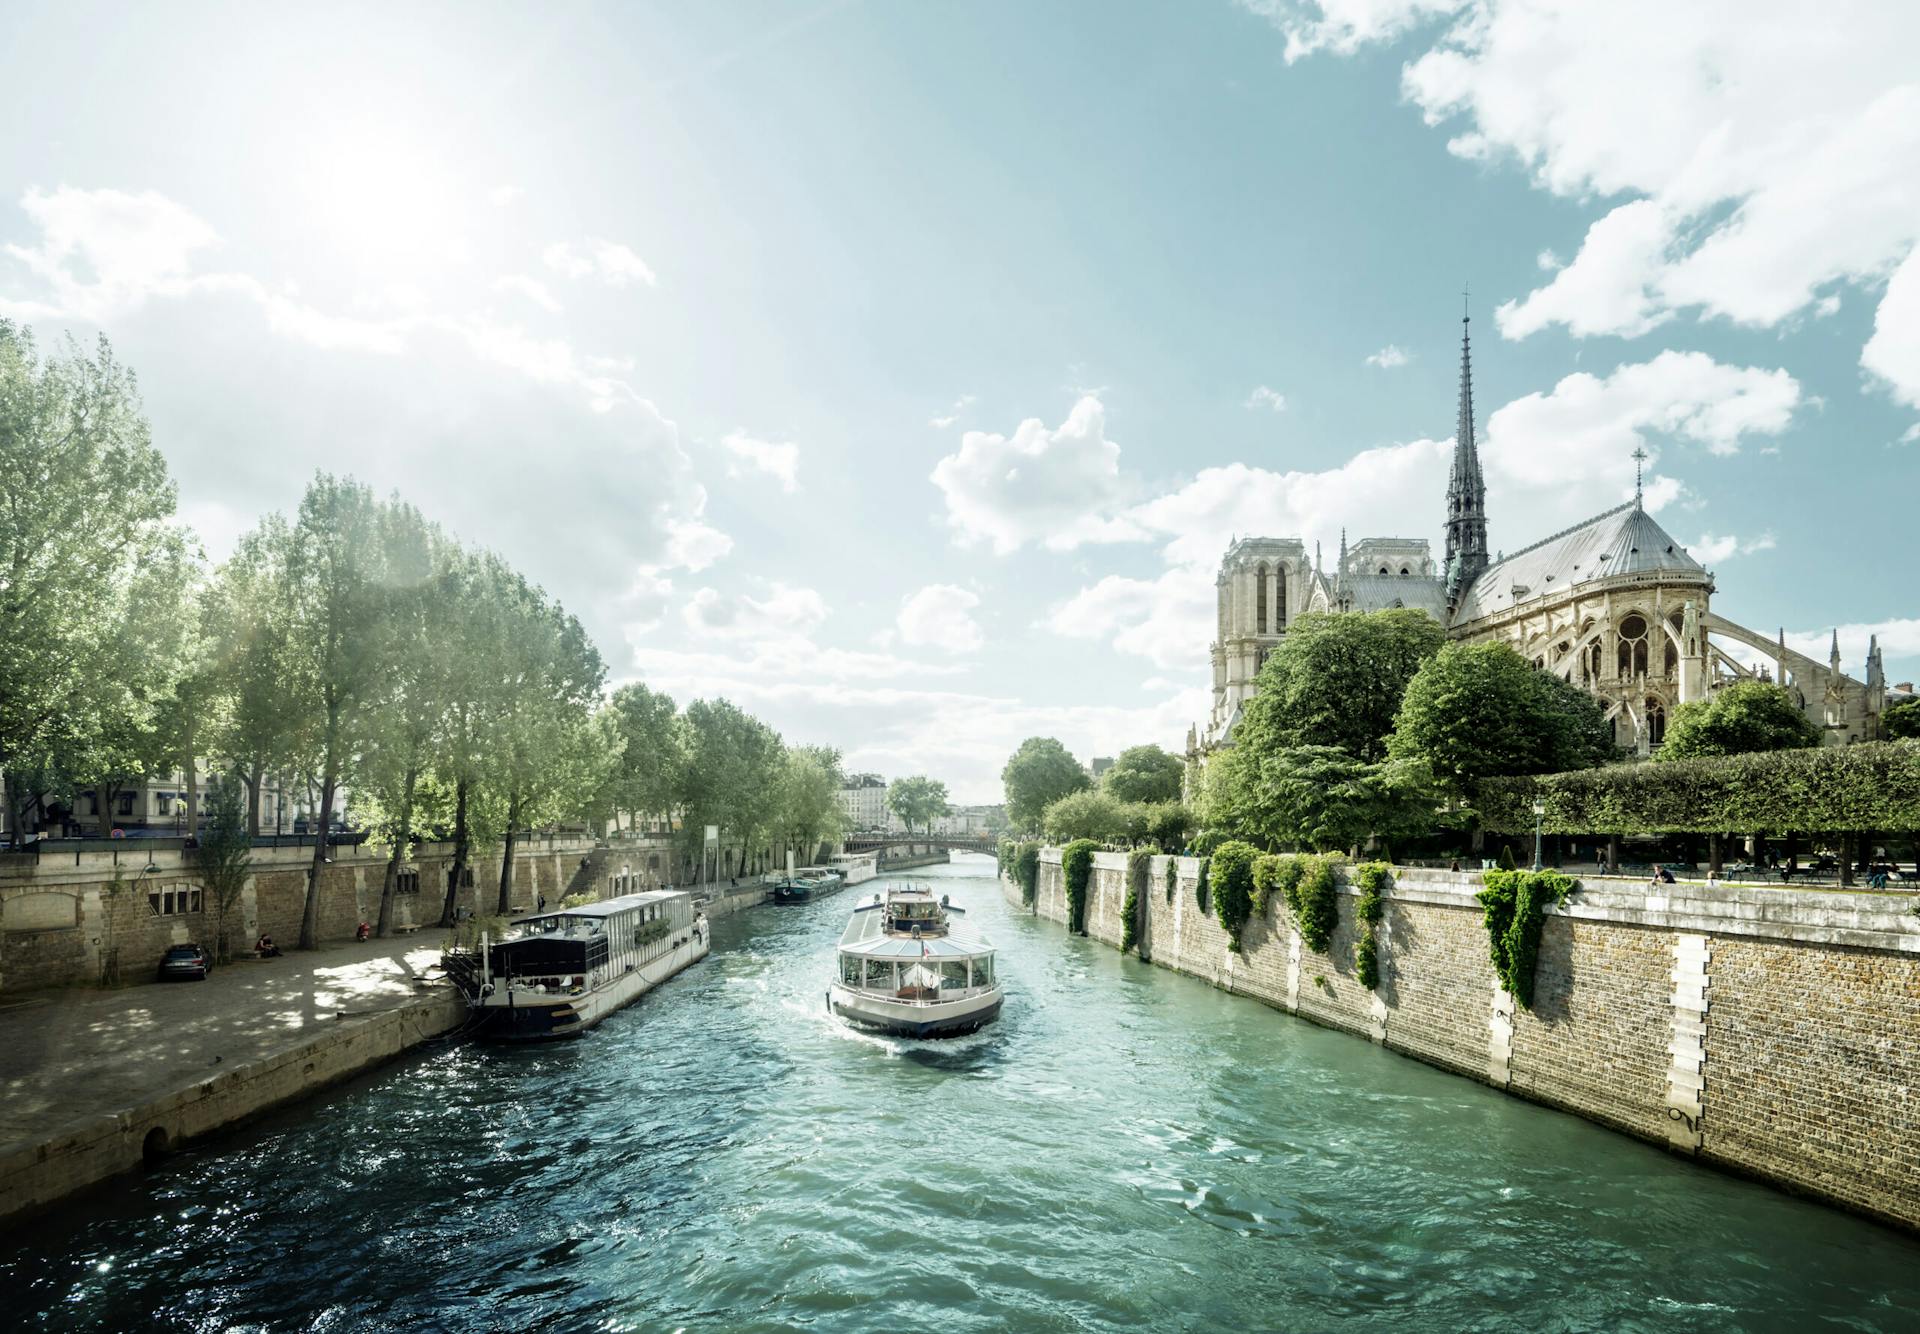 Näkymä Seine joen varrelta. Näkymässä jokilaivoja ja Notre Damen katedraali